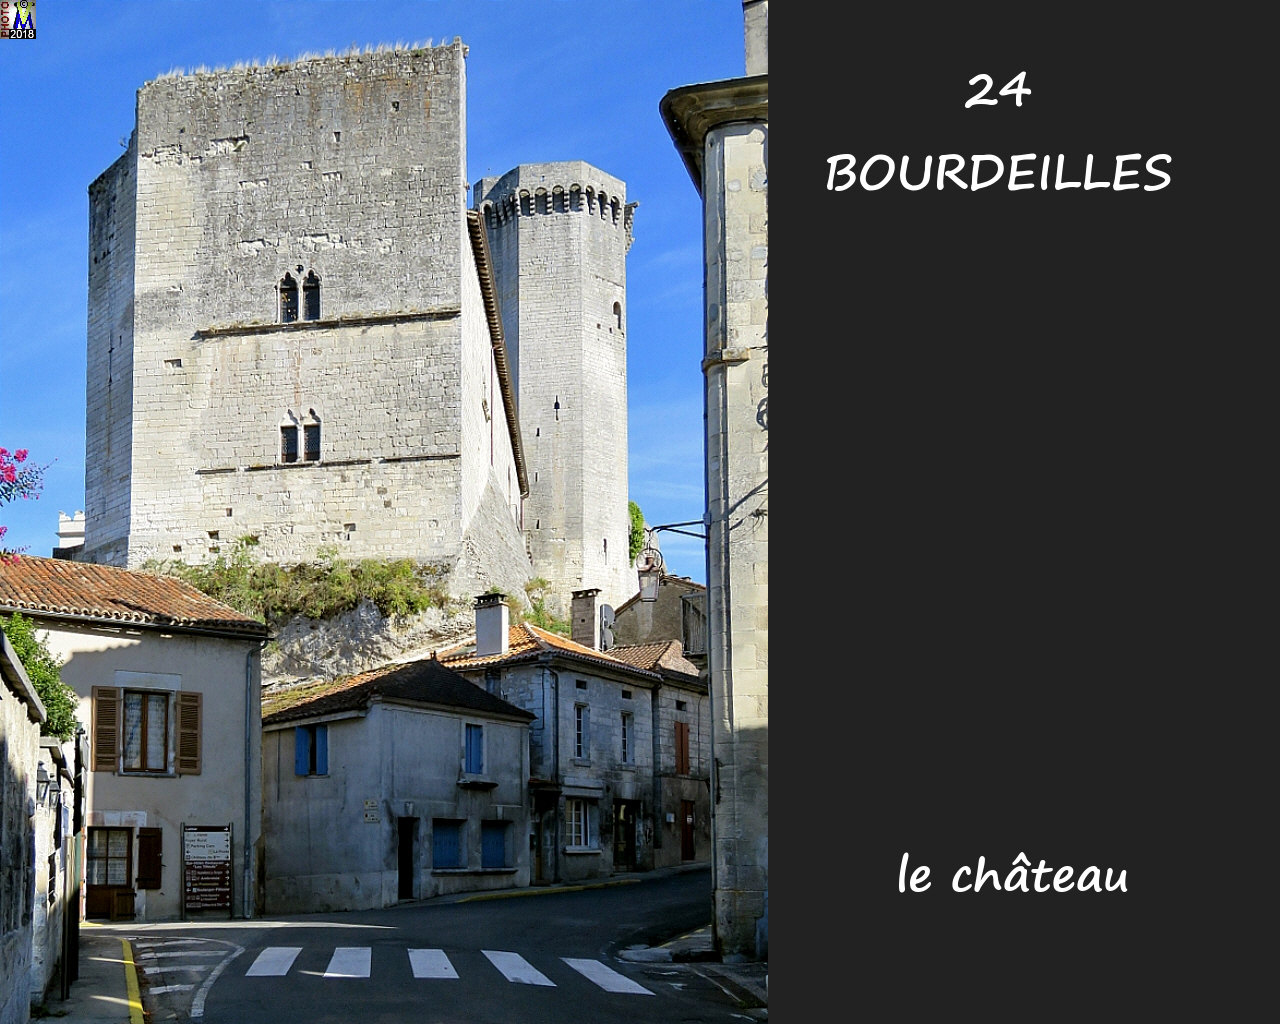 24BOURDEILLES_chateau_1004.jpg